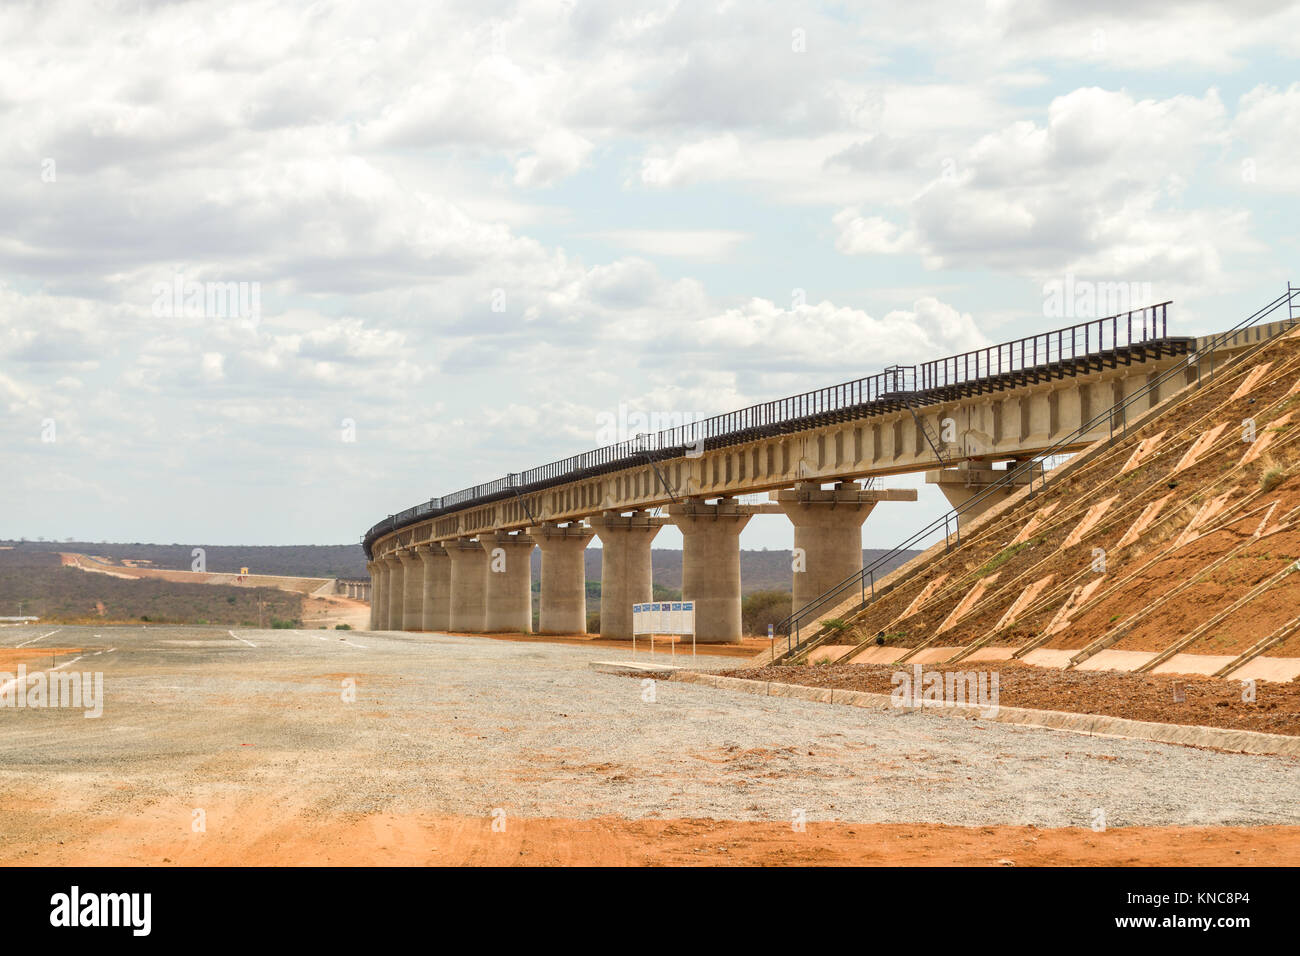 Teil von Mombasa nach Nairobi Standard Guage Railway vor kurzem in Tsavo, ein Viadukt gebaut wurde gebaut, damit die Tiere durch, Kenia, Stockfoto